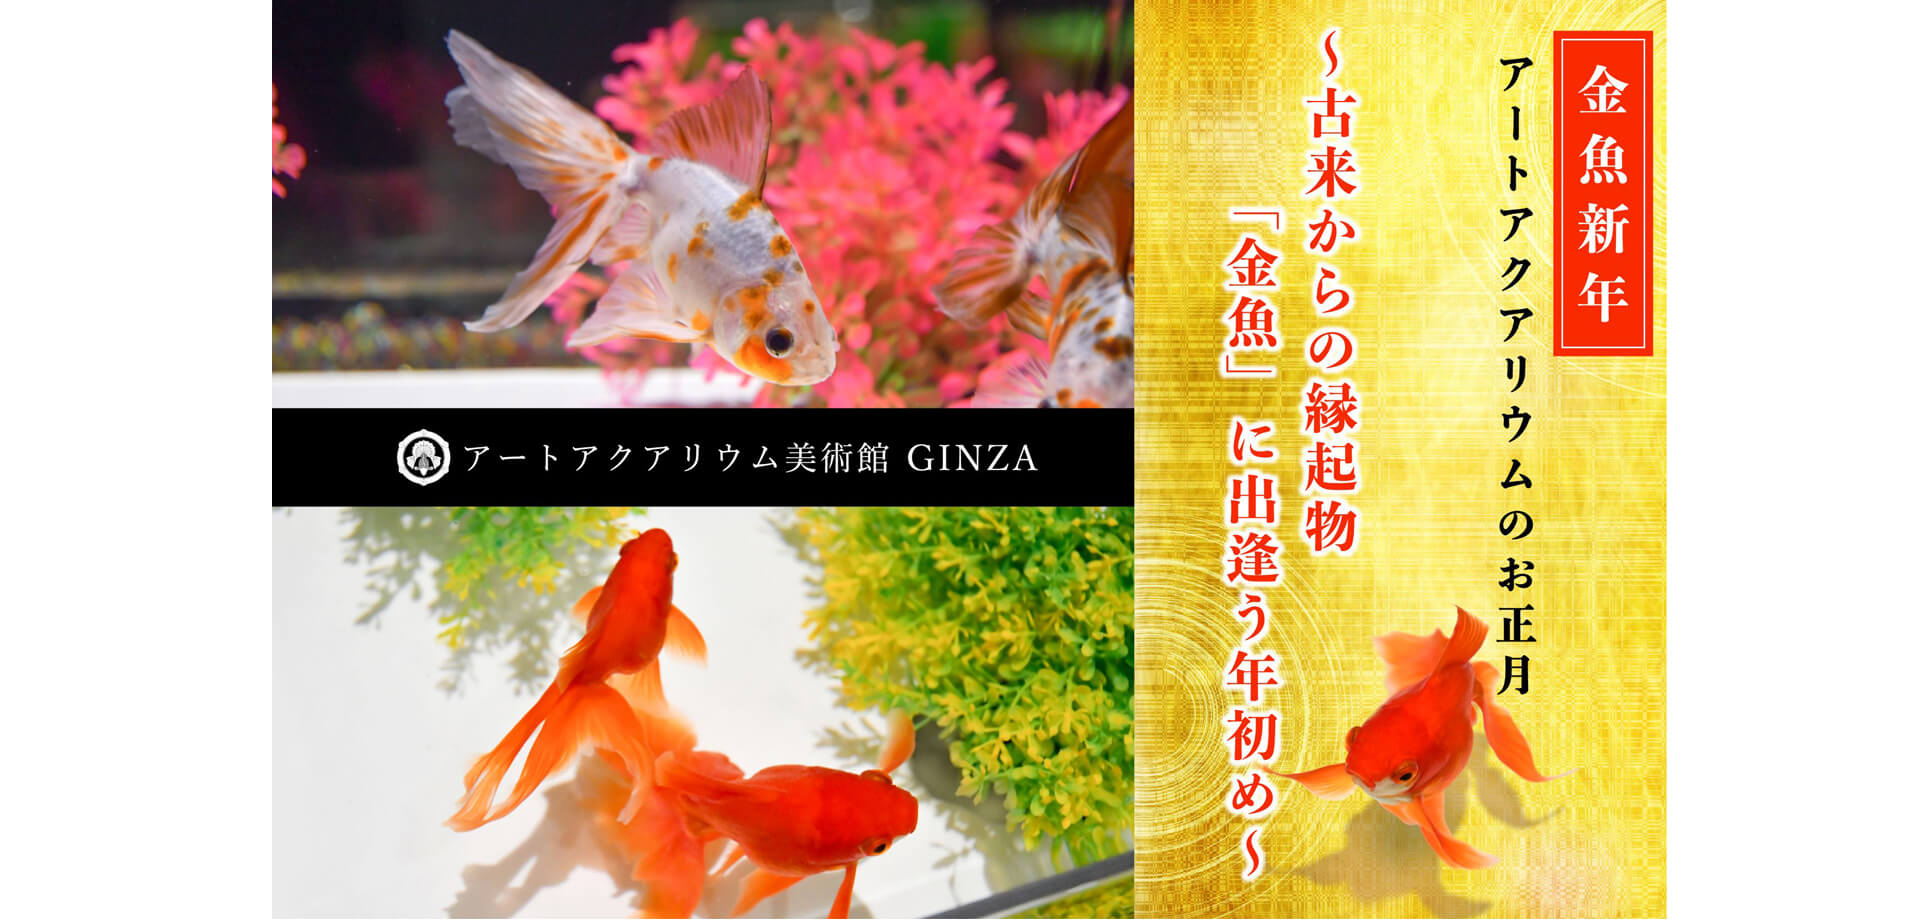 アートアクアリウム美術館 GINZA　金魚新年